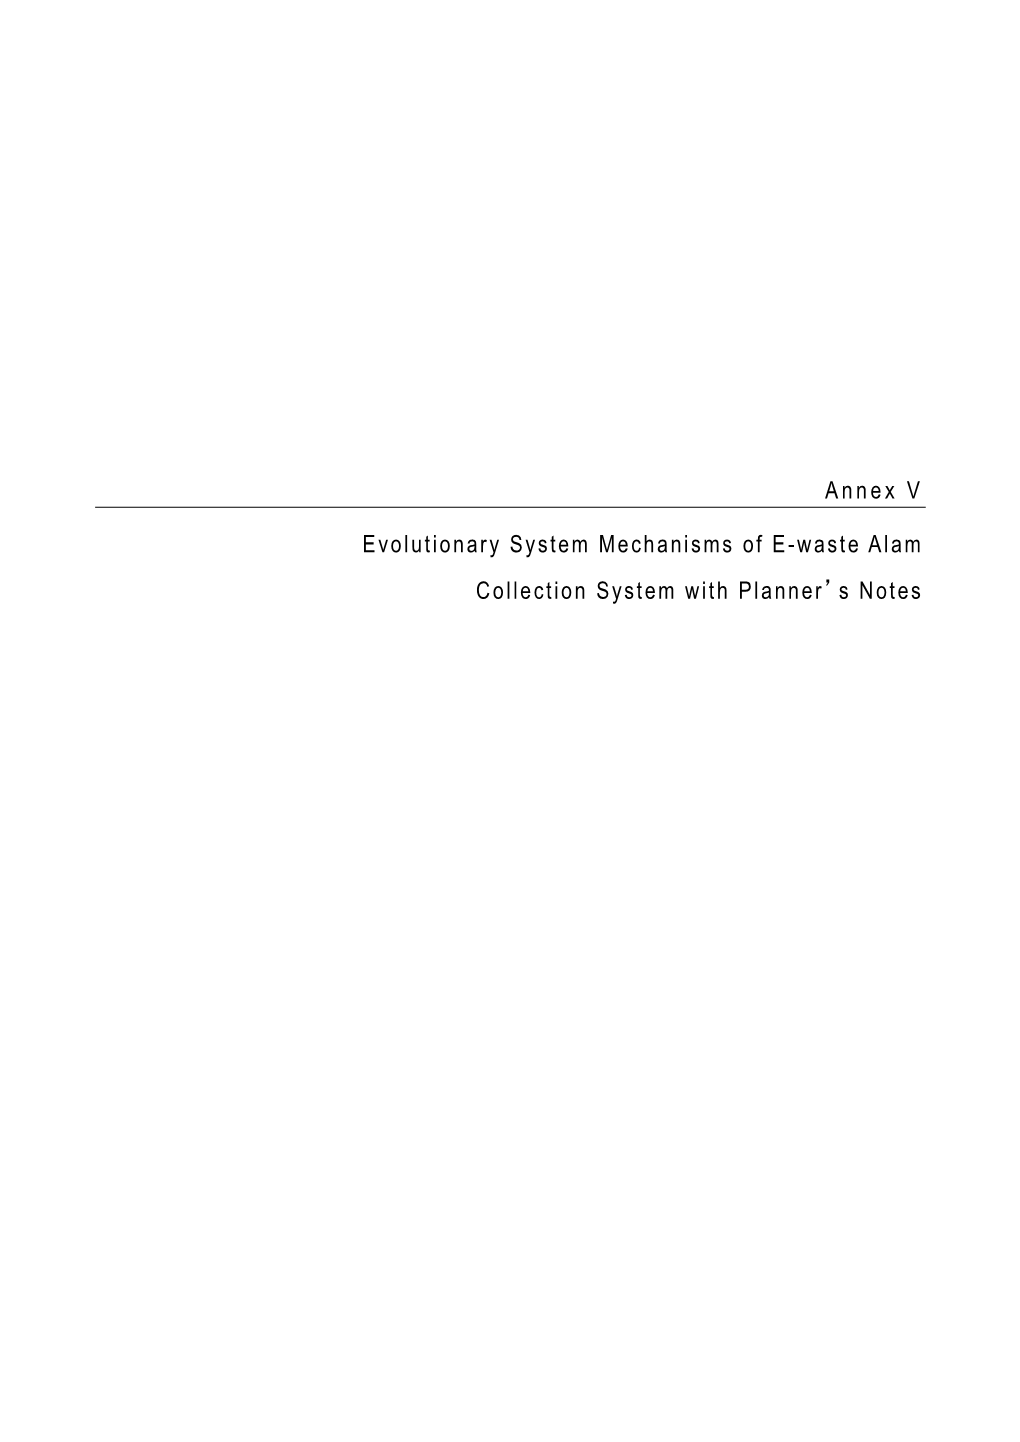 Annex V Evolutionary System Mechanisms of E-Waste Alam